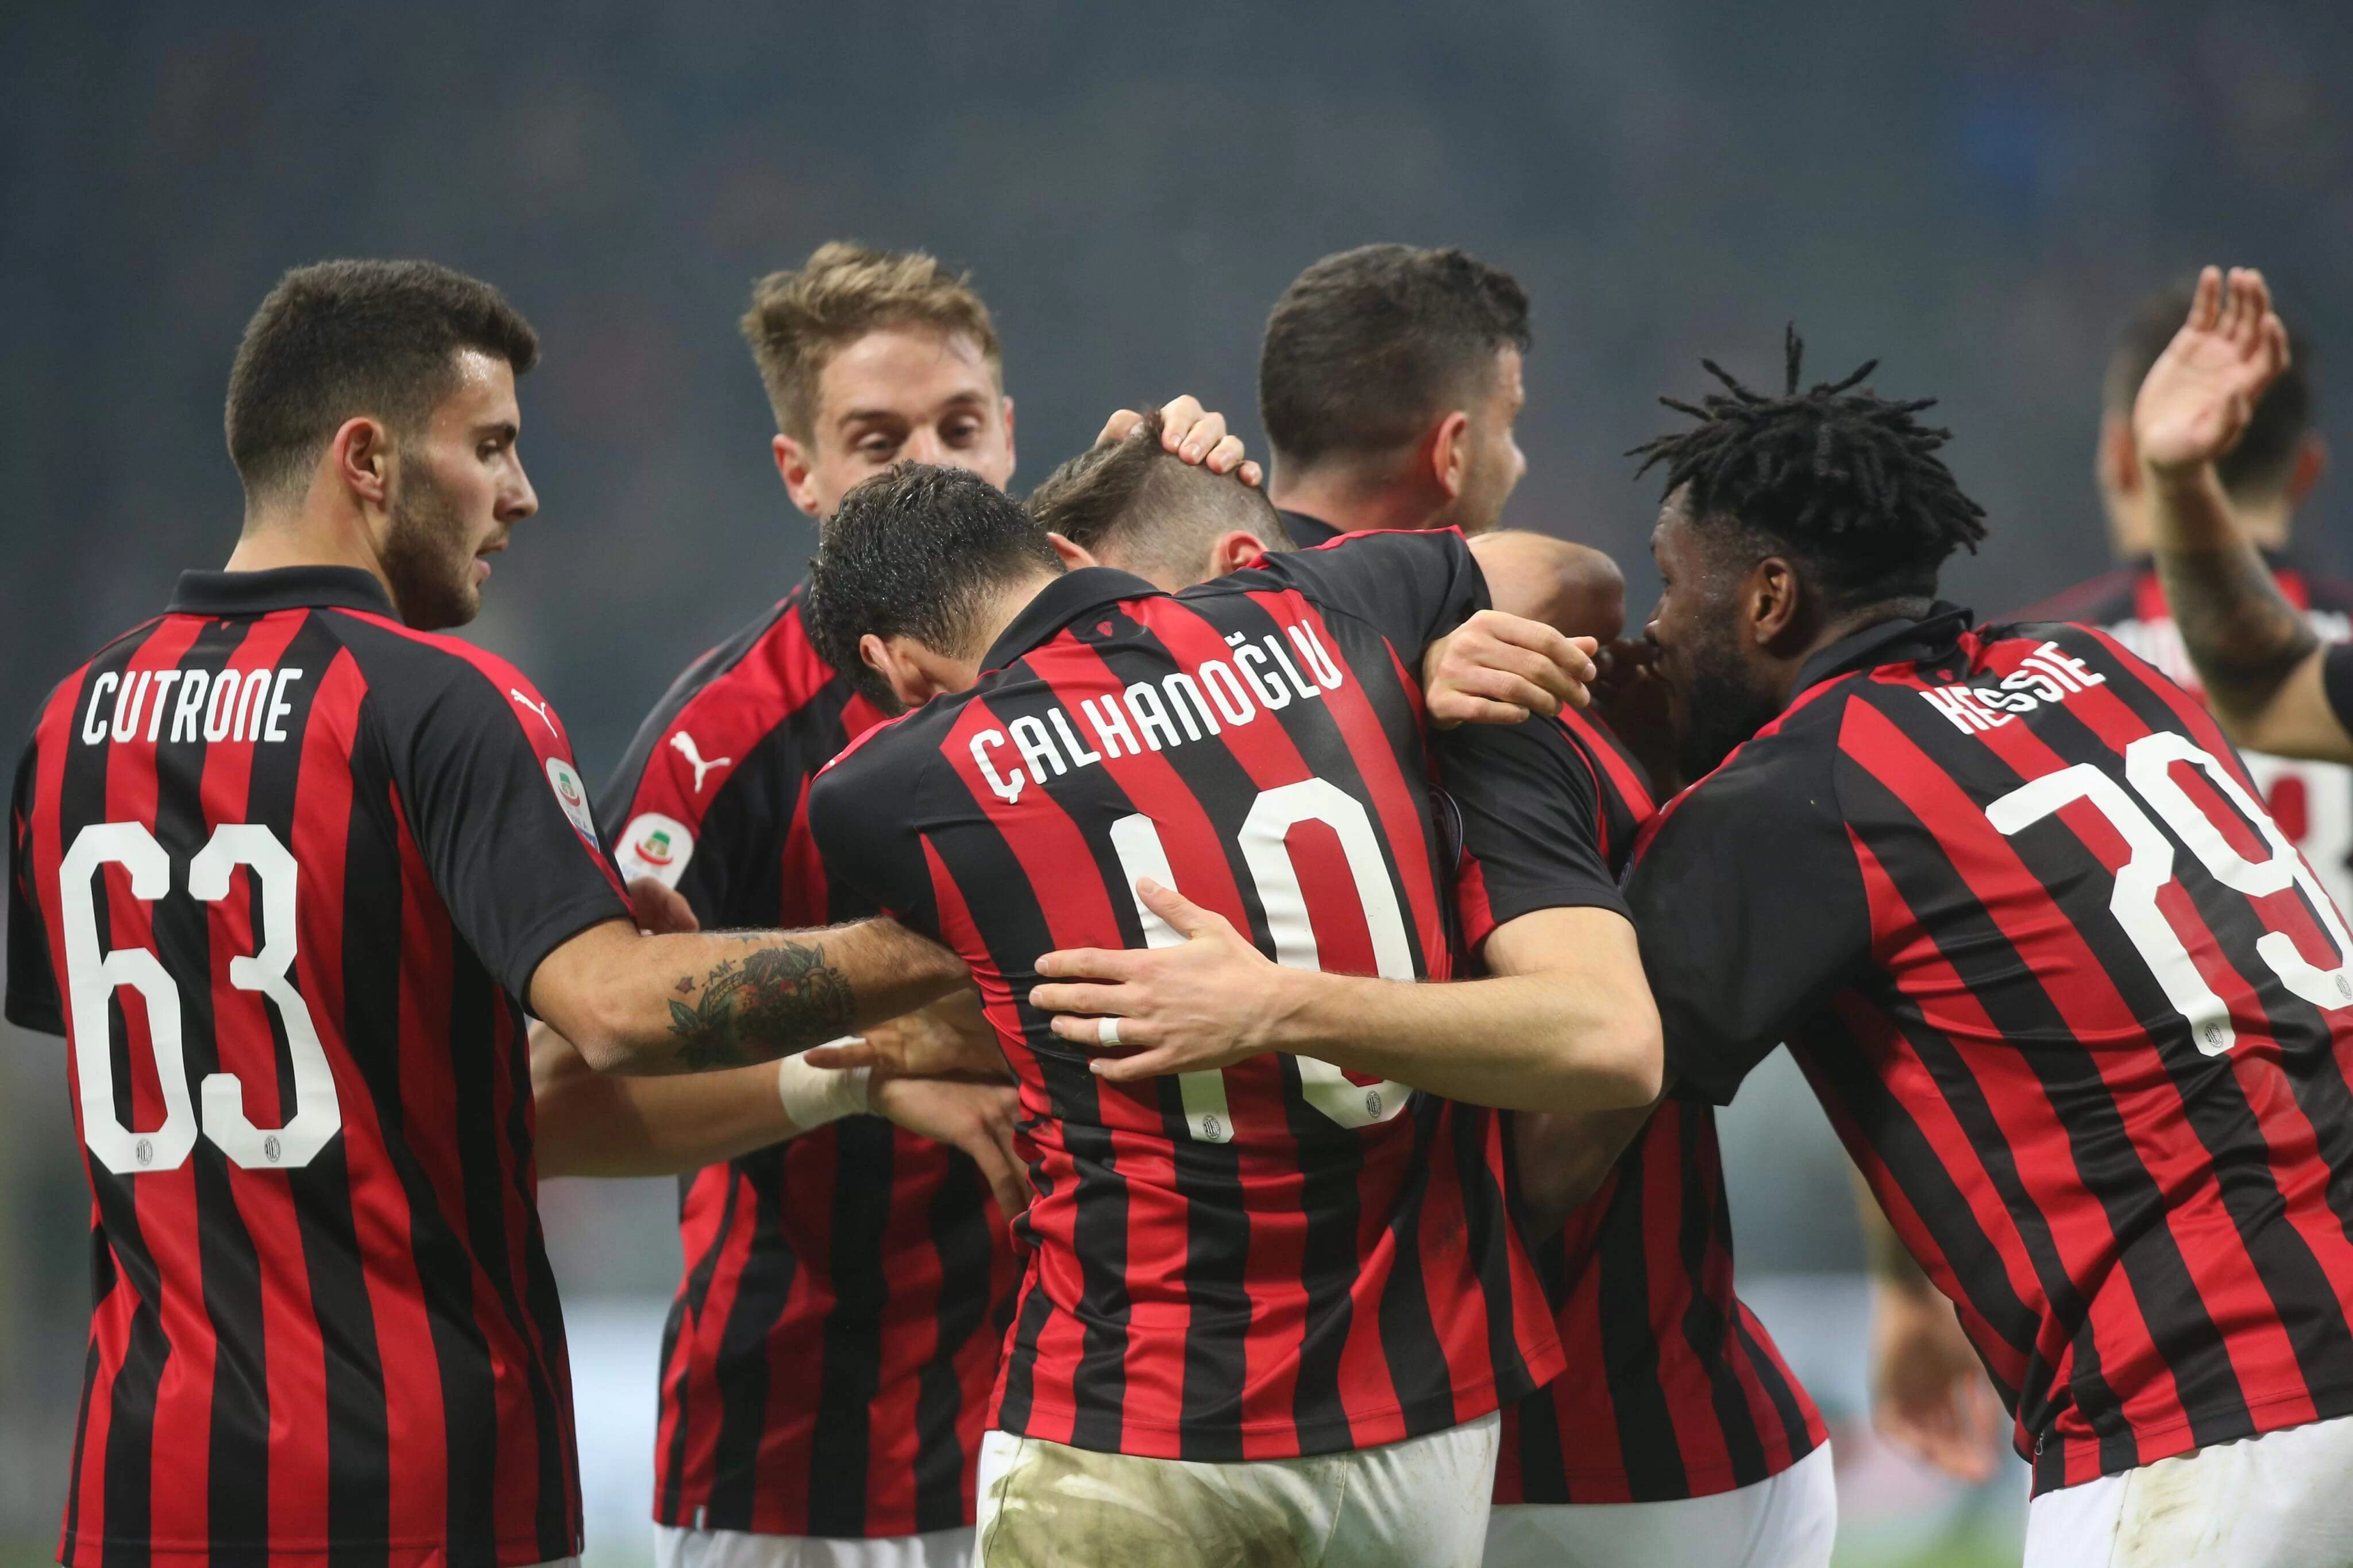 Il Milan riempie San Siro: entusiasmo, terzo posto e Champions. Gattuso sogna l’allungo